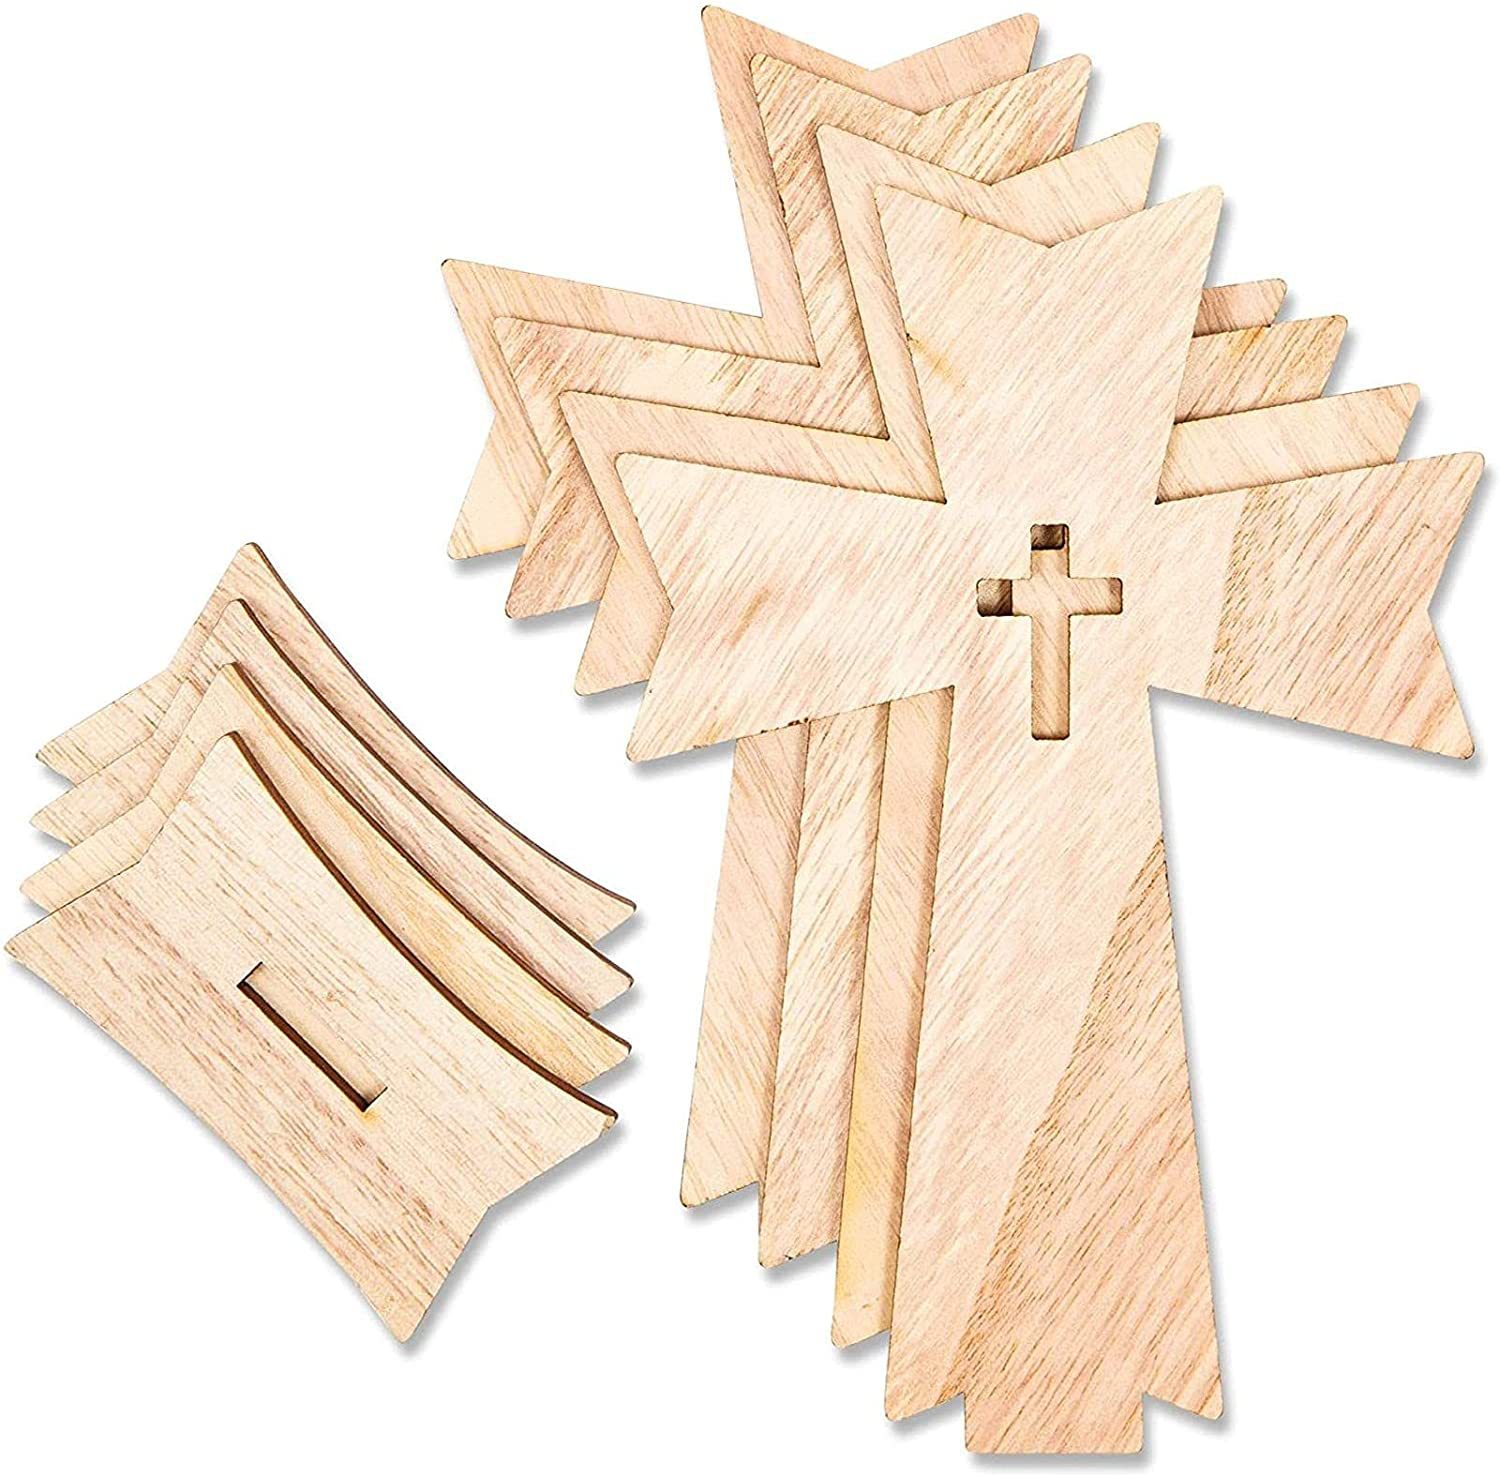 10pcs Wooden Cross Ornaments Wooden Cross Catholic Wood Crosses